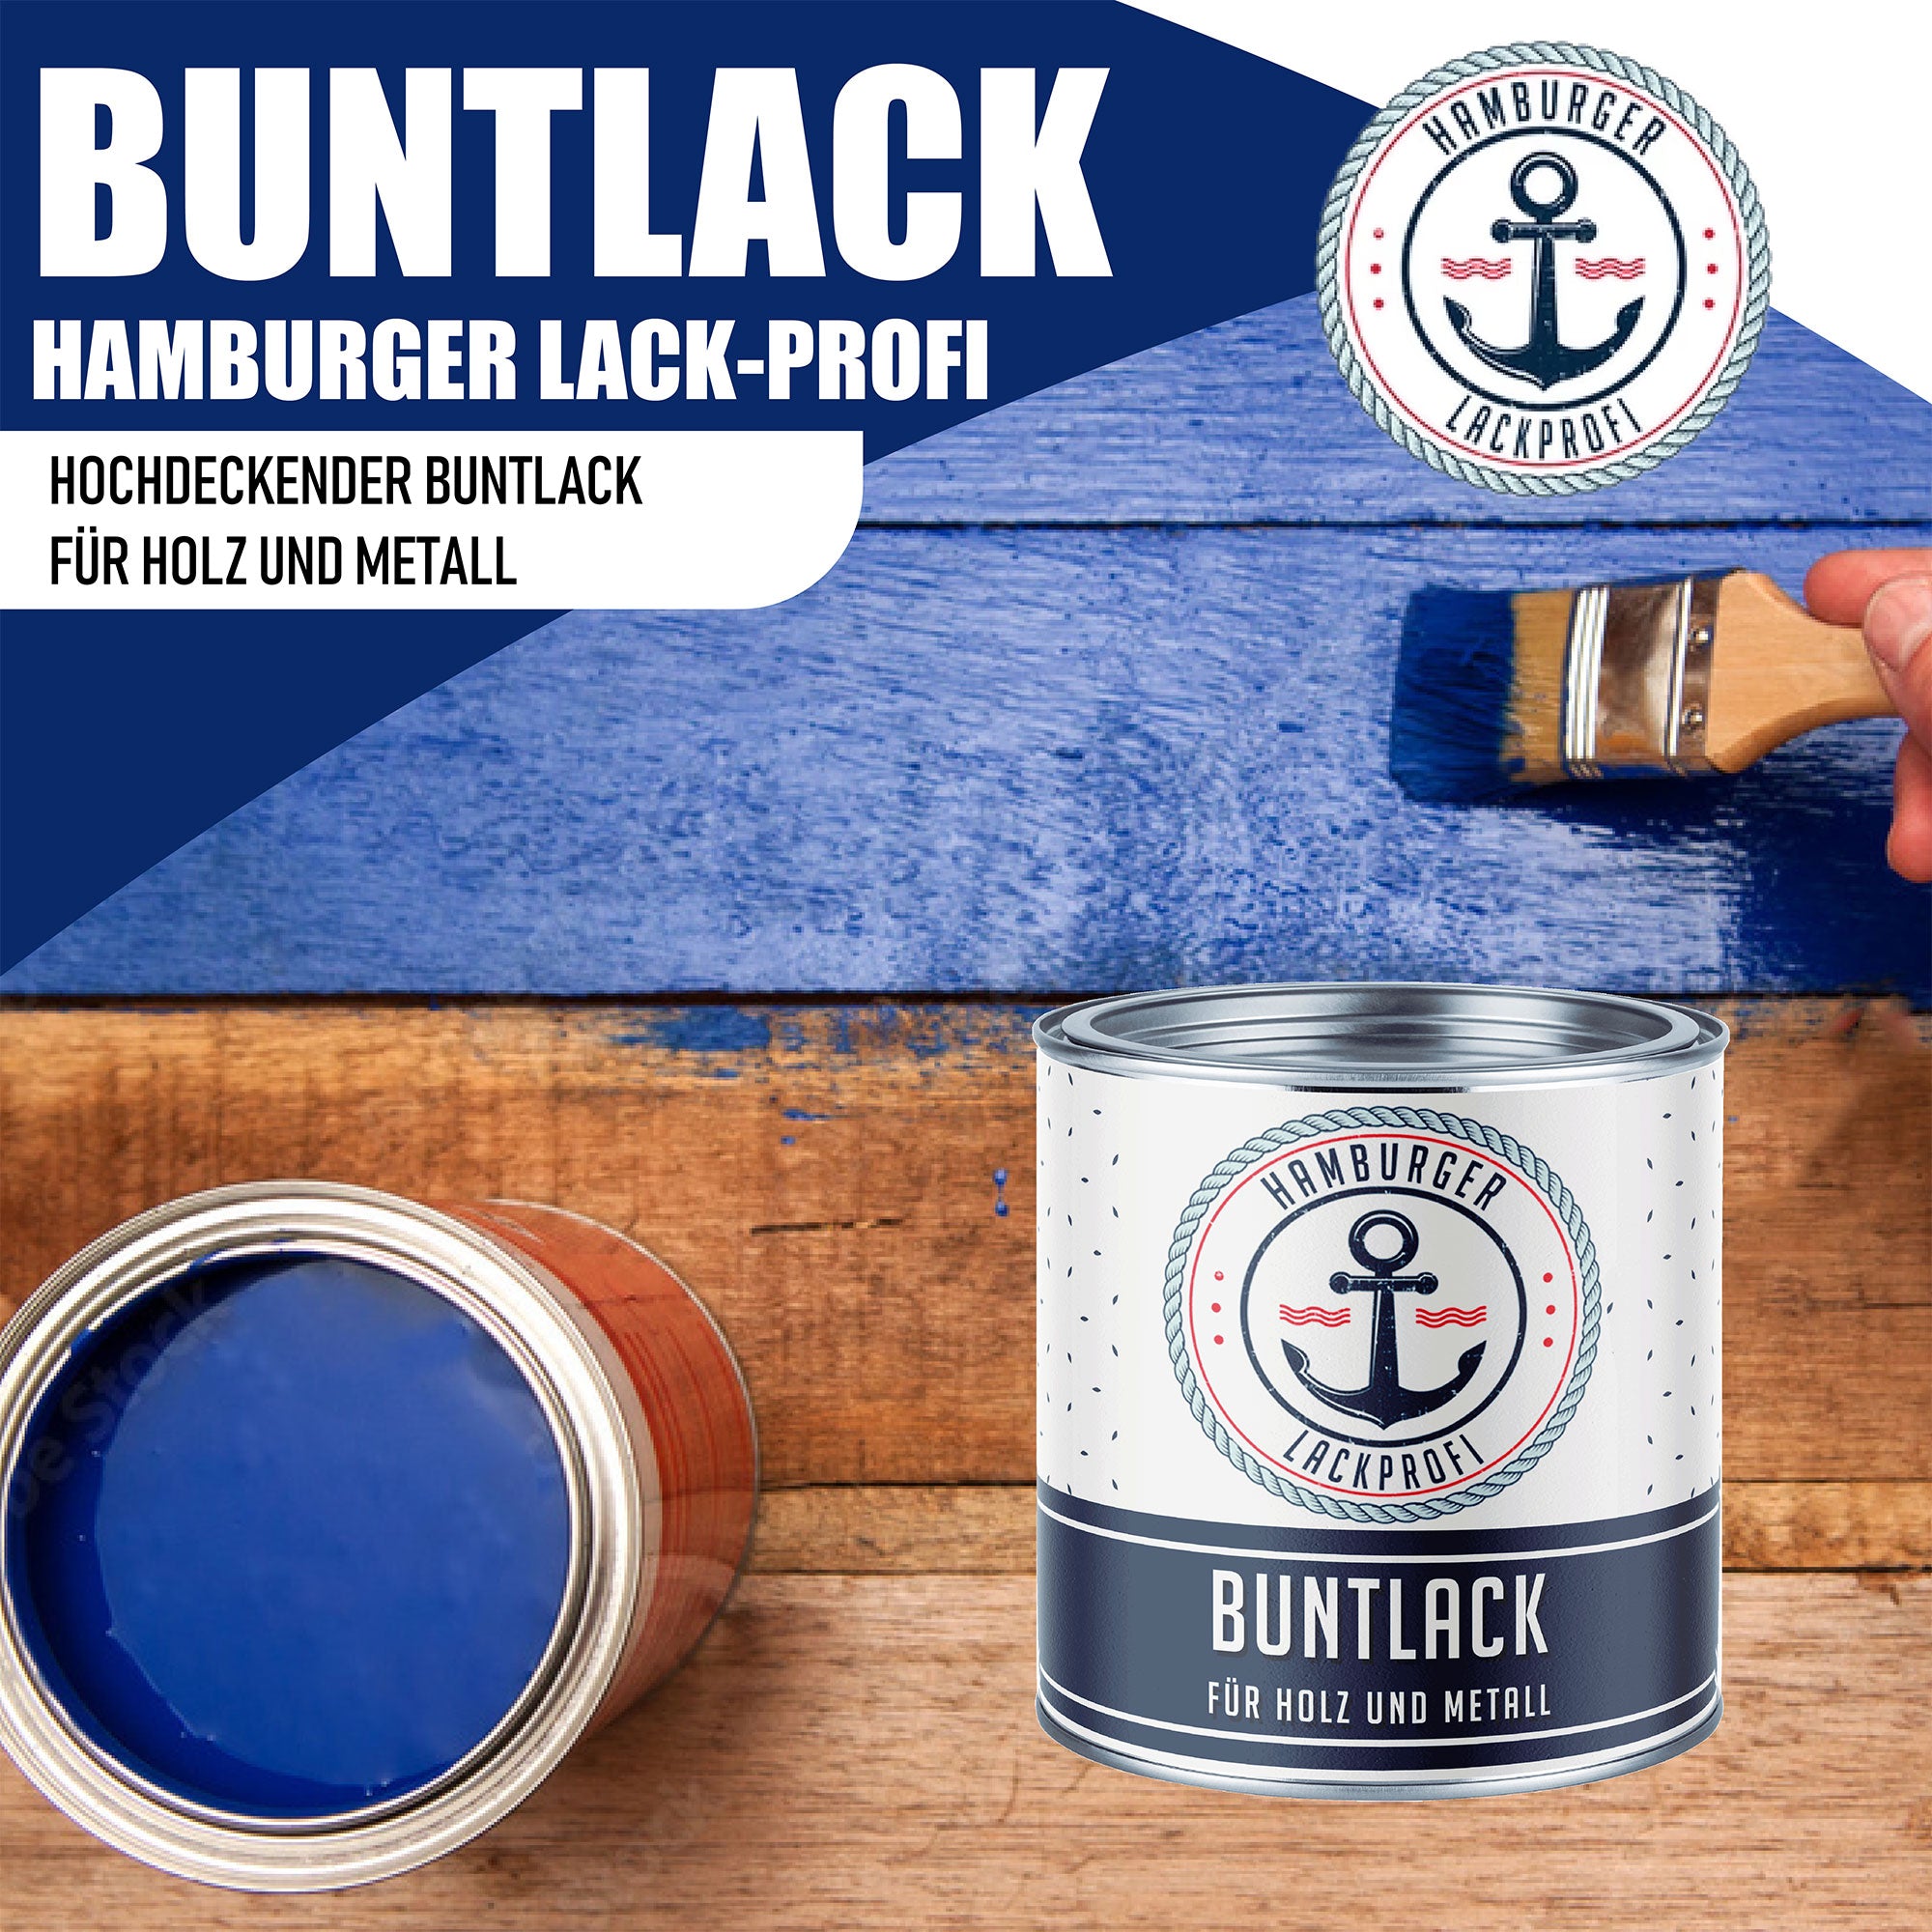 Hamburger Lack-Profi Buntlack Türkisblau RAL 5018 - Robuster Kunstharzlack